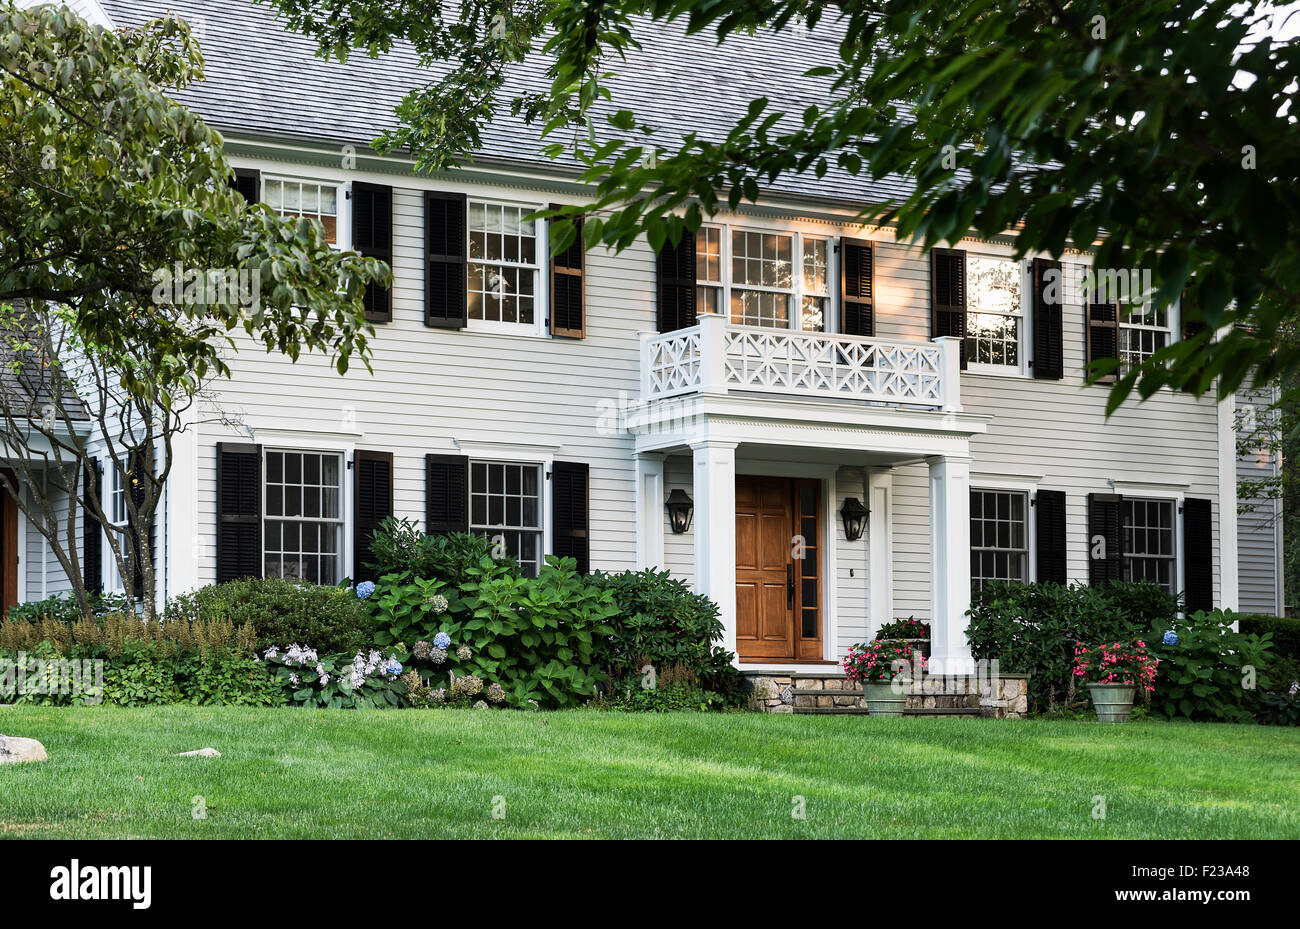 Ein gehobenes Haus mit attraktiven Landschaftsgestaltung, USA Stockfoto